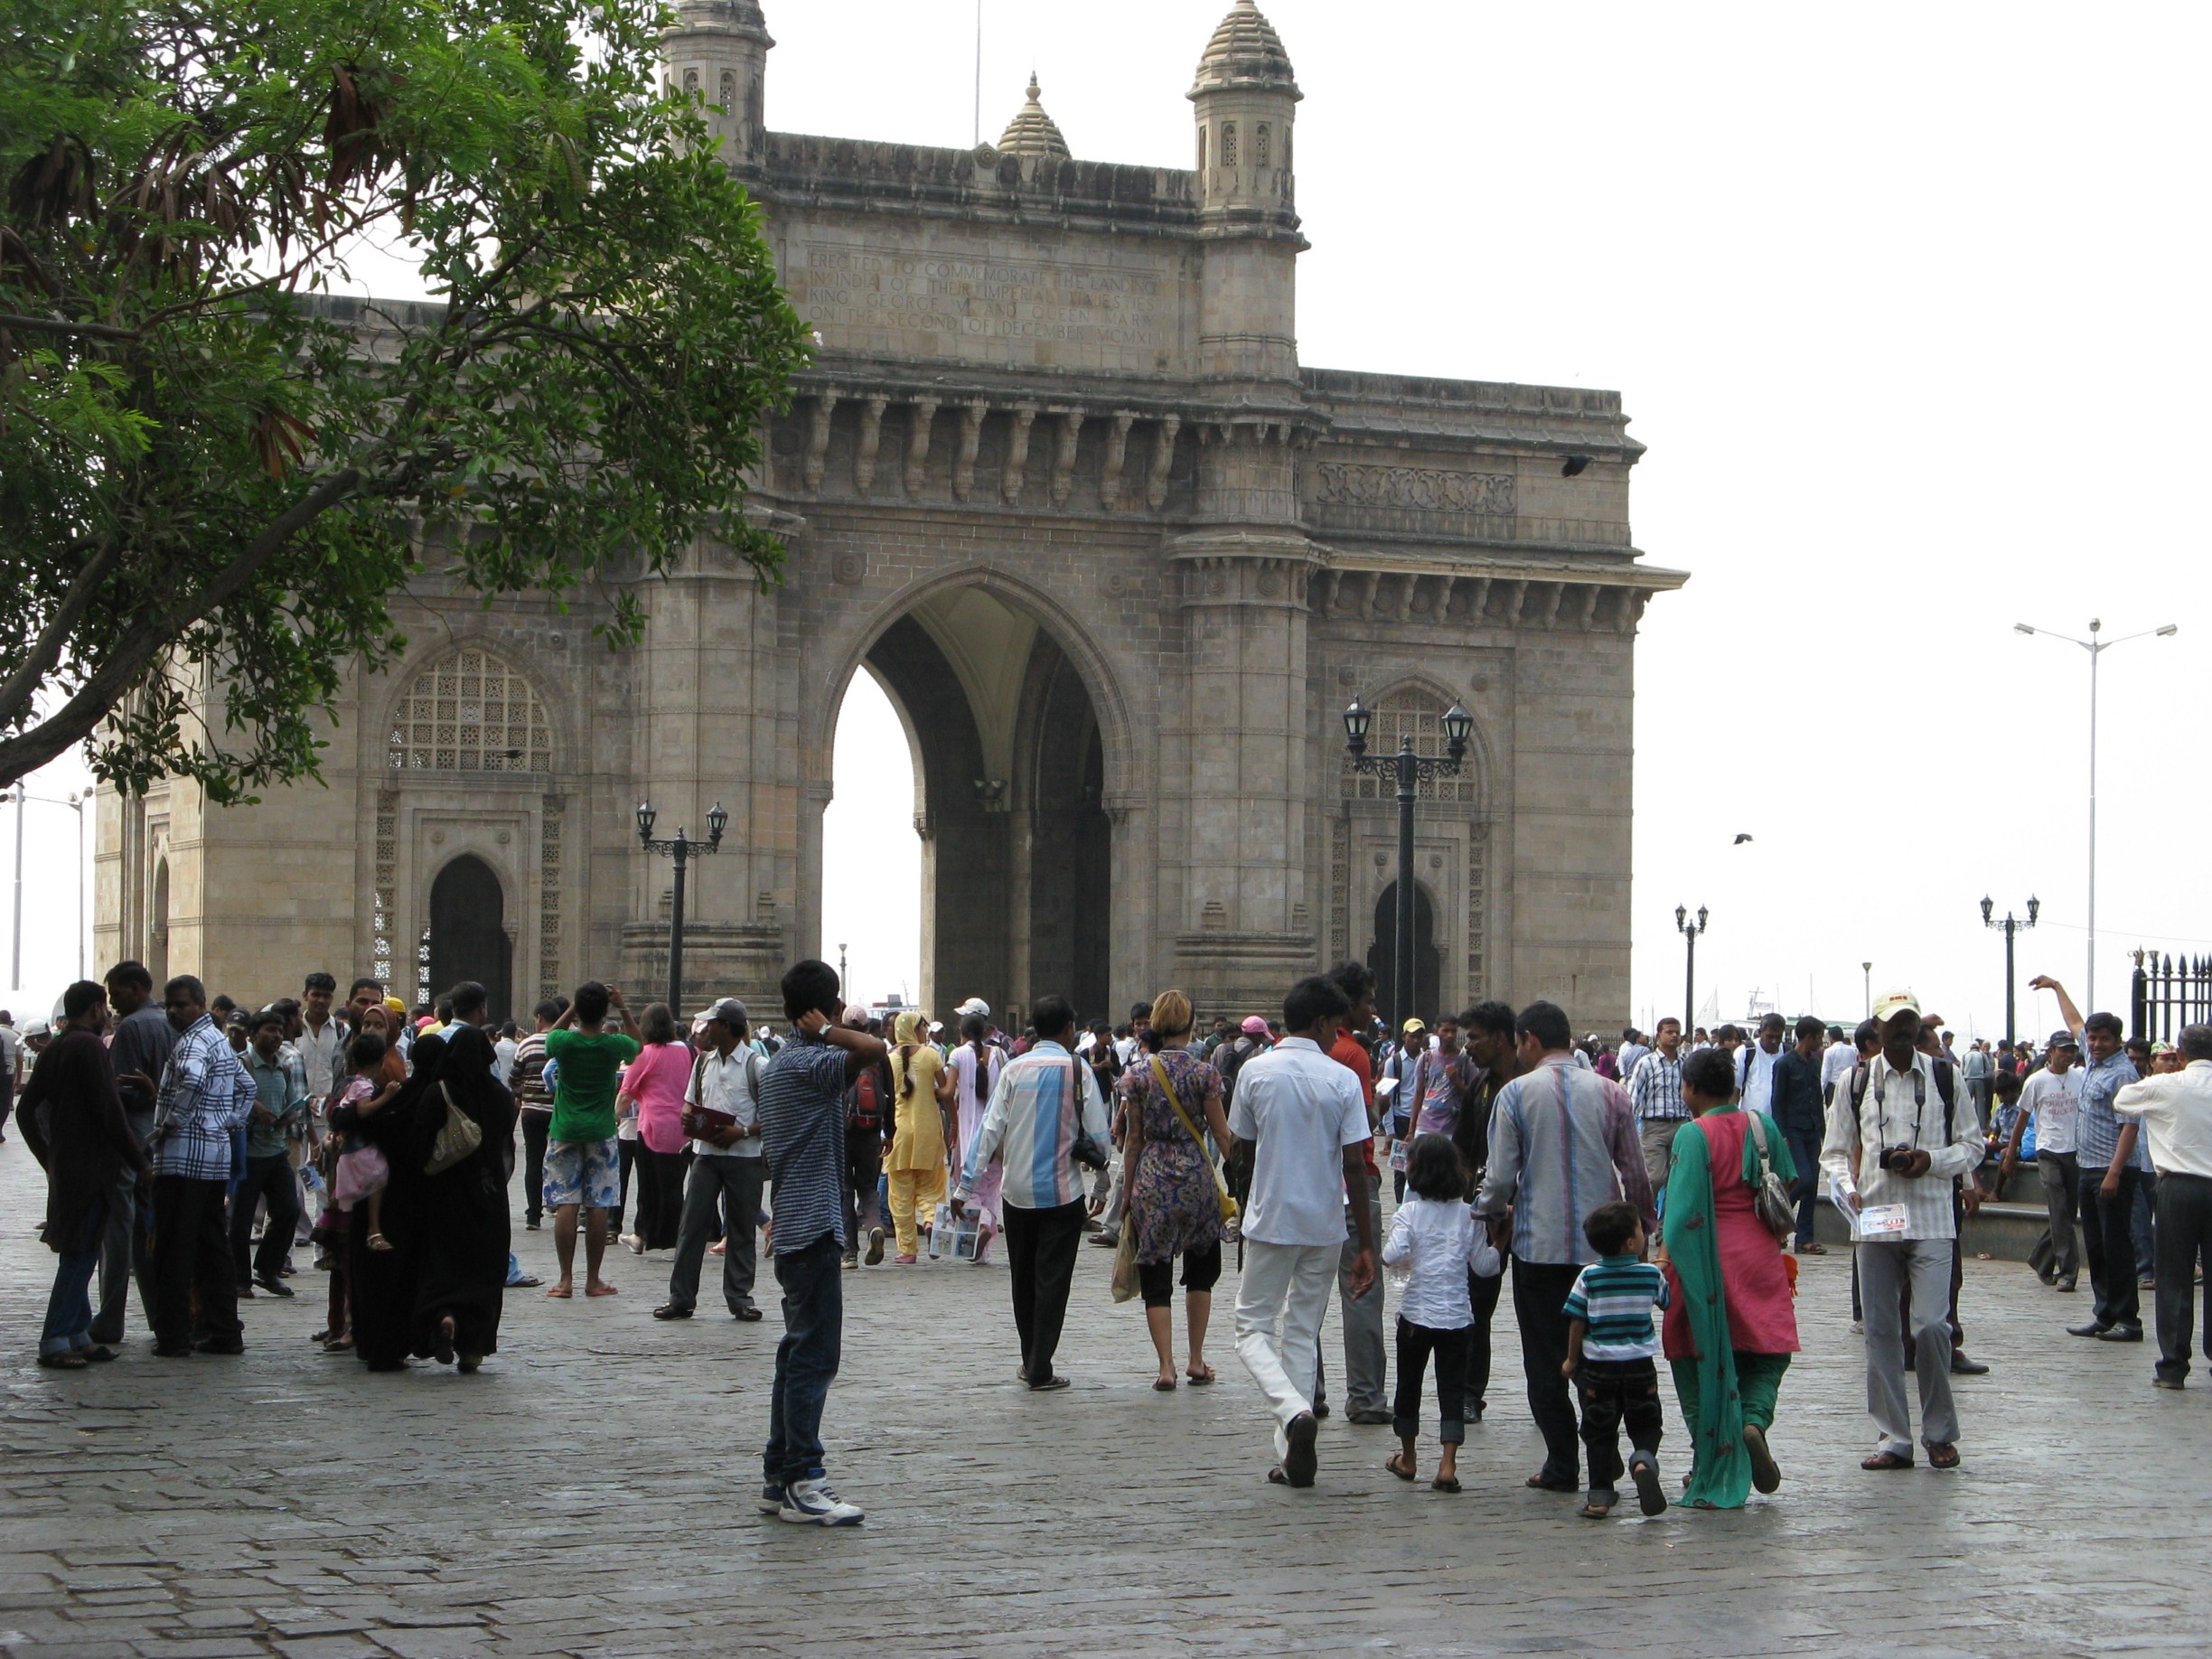 “The Gate of India“, das Wahrzeichen von Mombai.